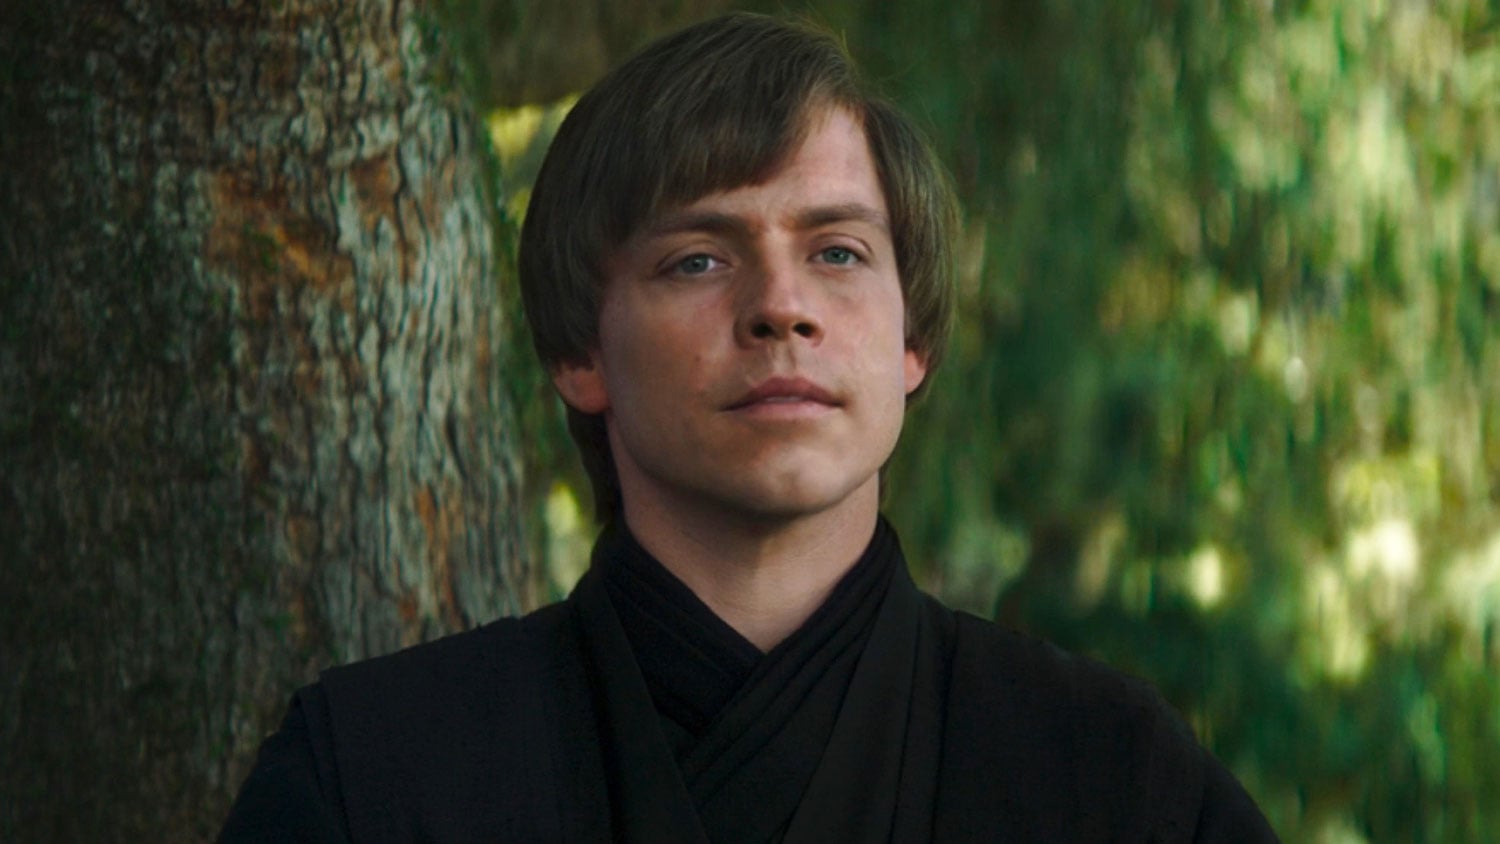 Luke-Skywalker-Star-Wars-Show-Lucasfilm